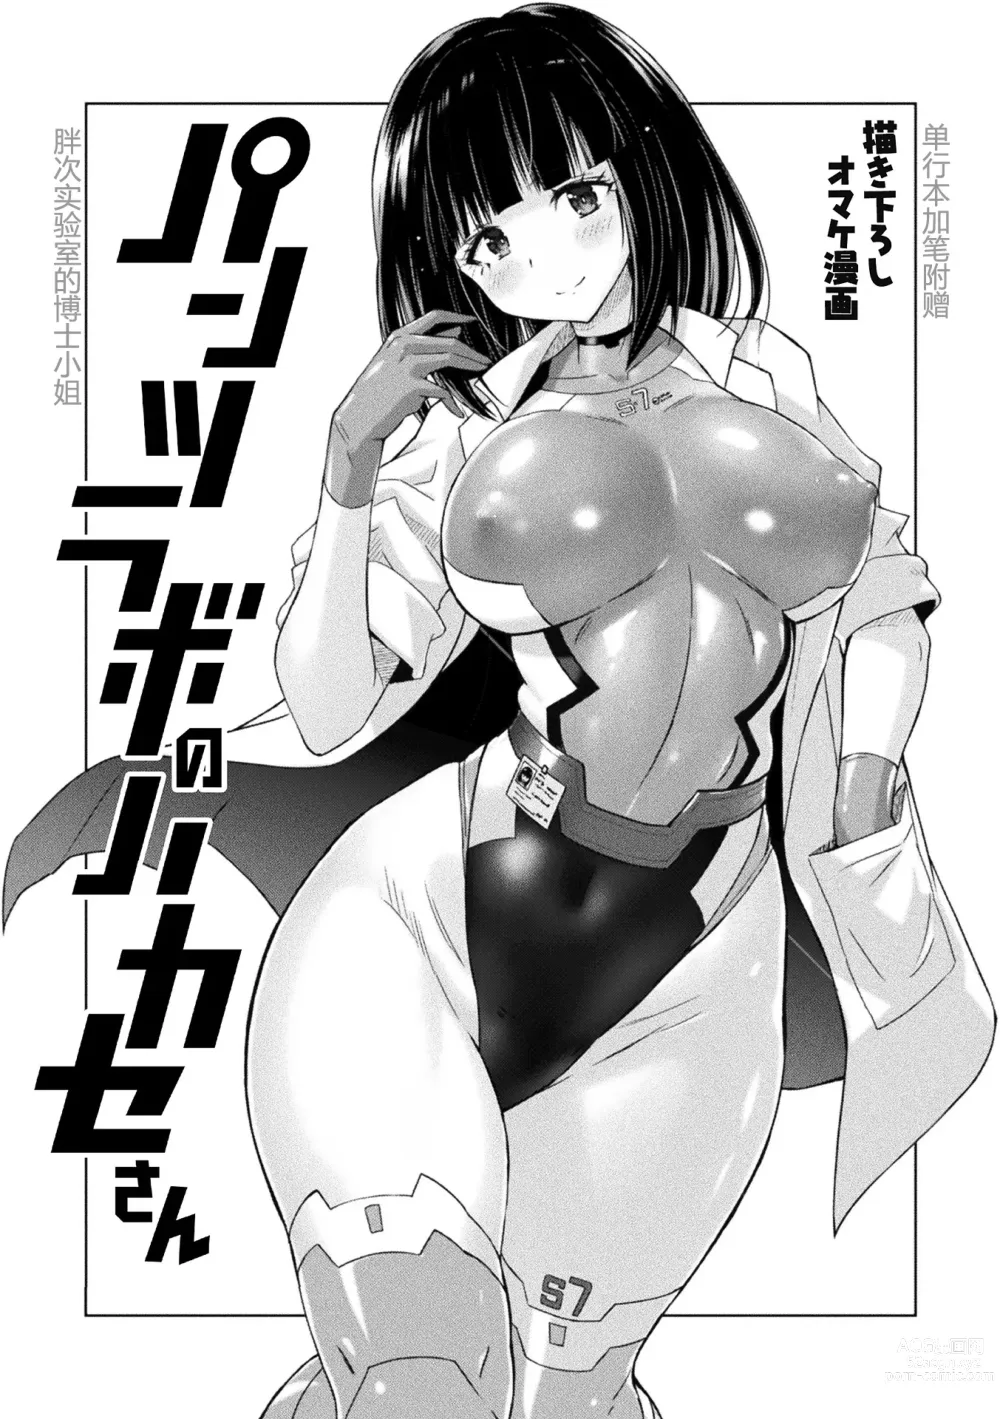 Page 19 of manga 胖次实验室 正篇+加笔【精神胡萝卜尚西·尚特耐脑控汉化】